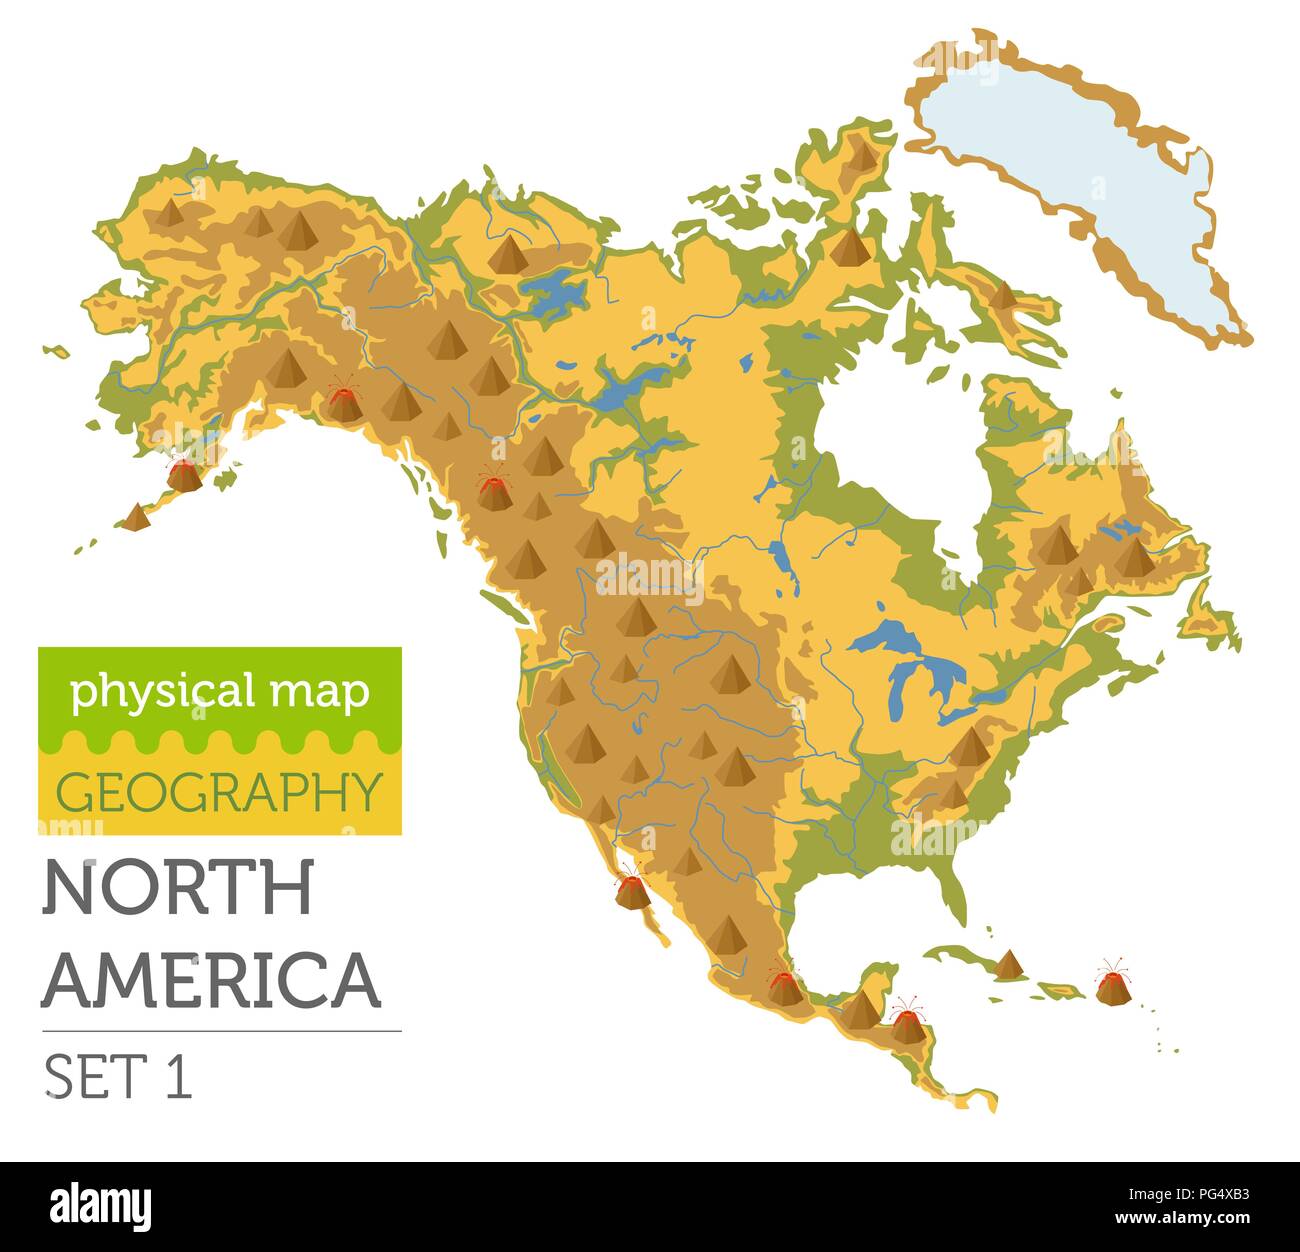 Nordamerika physische Karte Elemente. Ihre eigene Geographie info Graphische Sammlung aufzubauen. Vector Illustration Stock Vektor